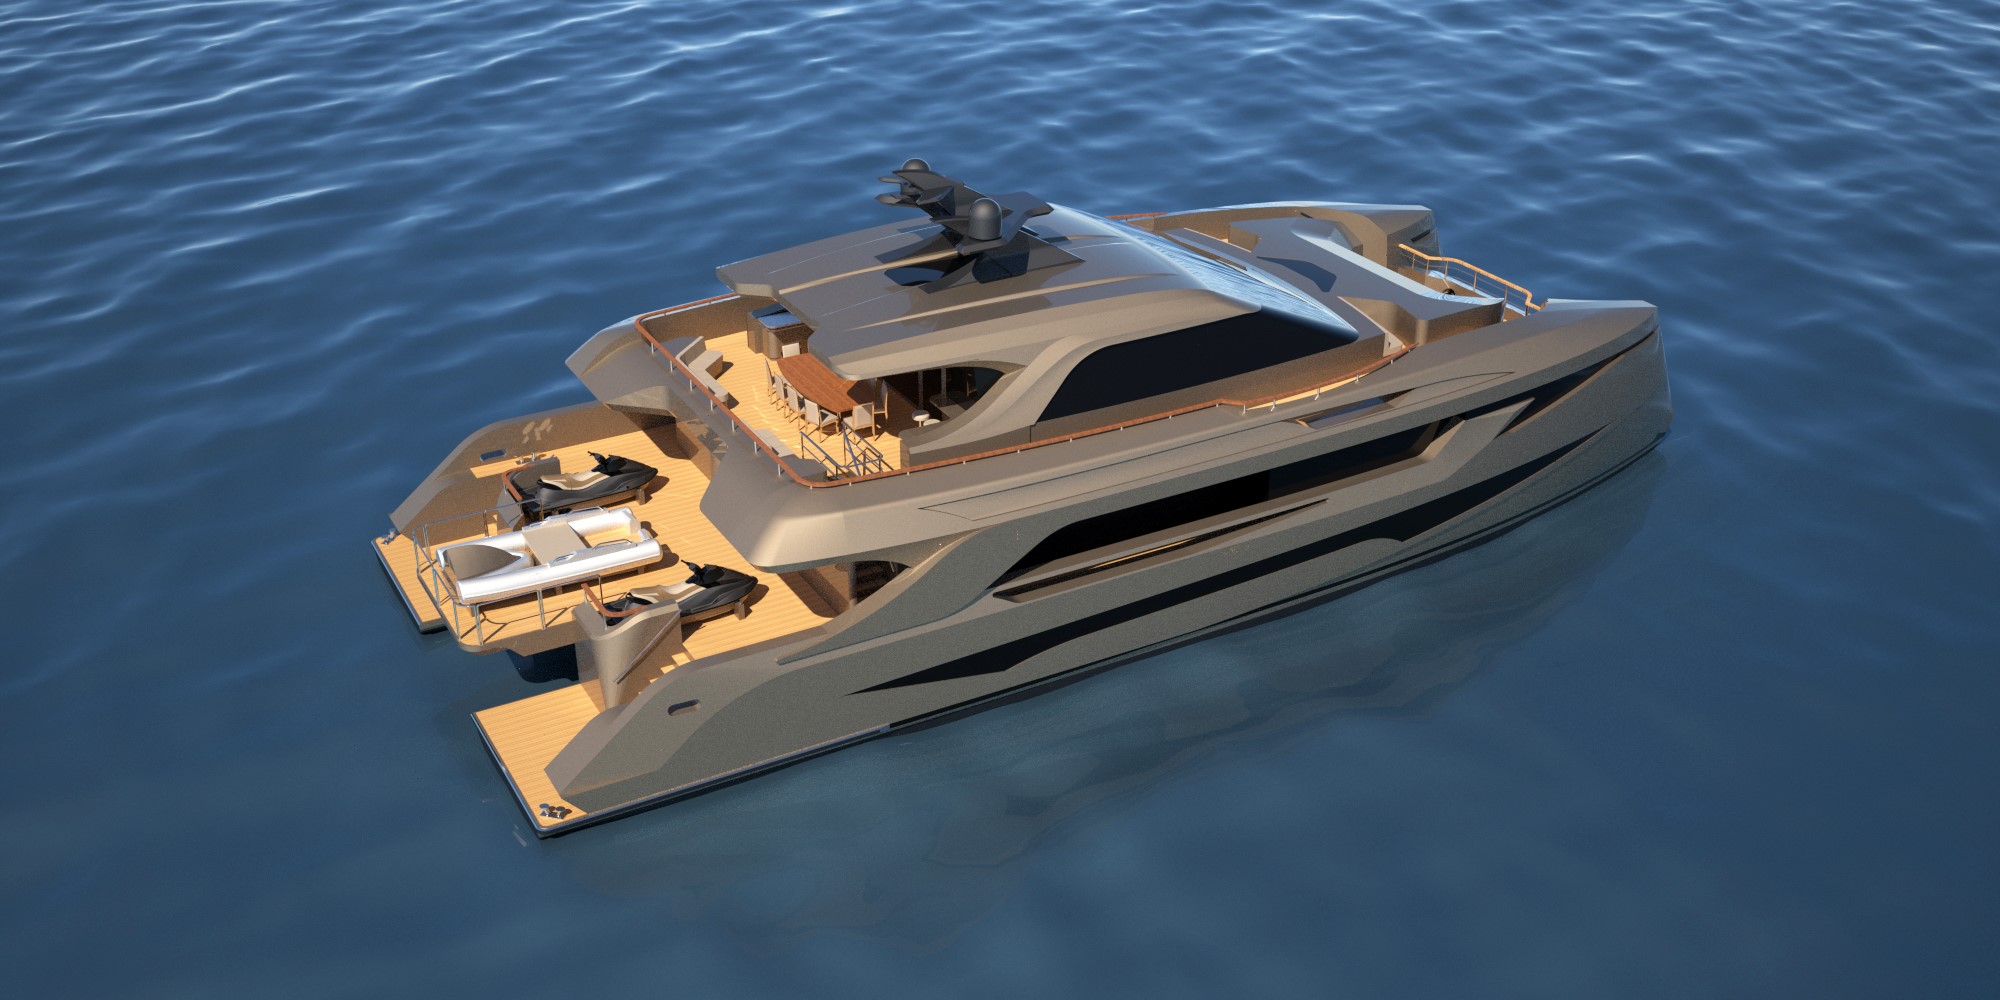 Echo Yachts Mmyd Announce New Fully Customizable Sp30 Catamaran Motor Yacht Design For Flibs 2020 Superyacht Australia